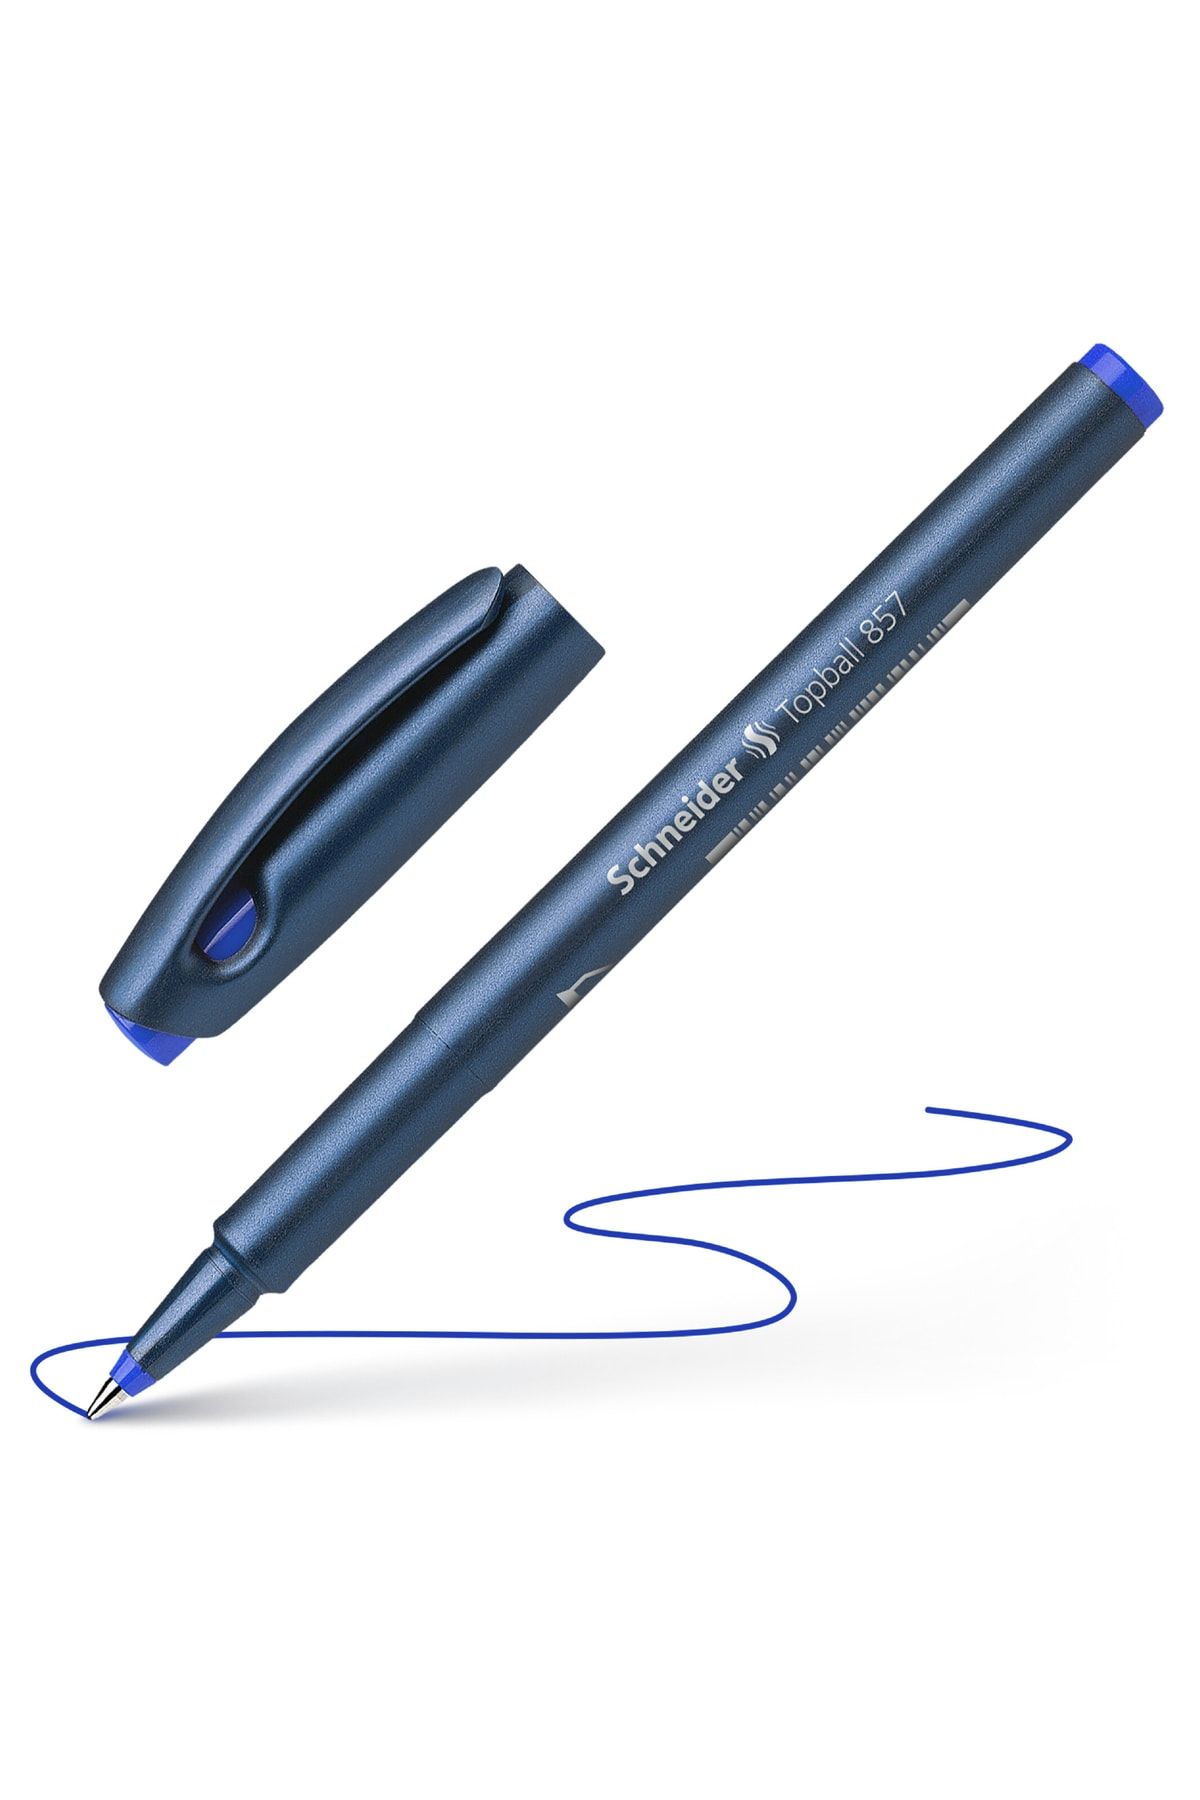 Schneider Topball 857 Roller Pen 0.6